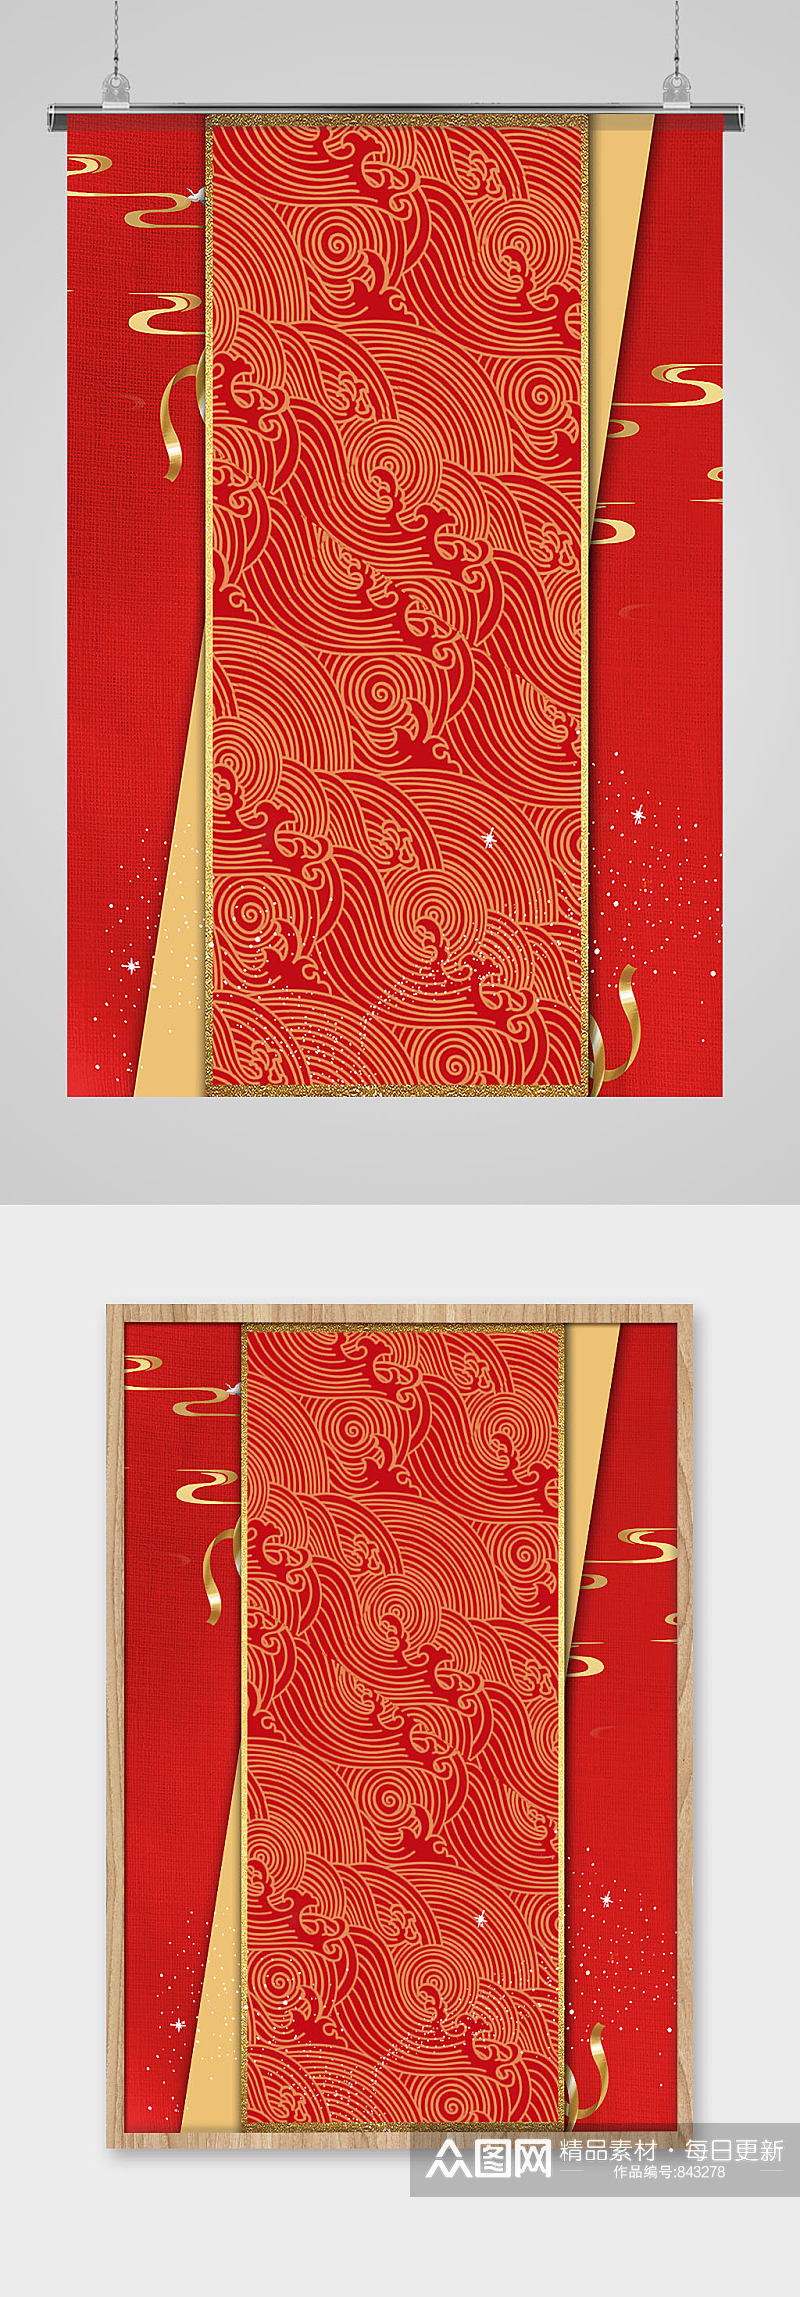 A4中国风红色花纹背景图片素材